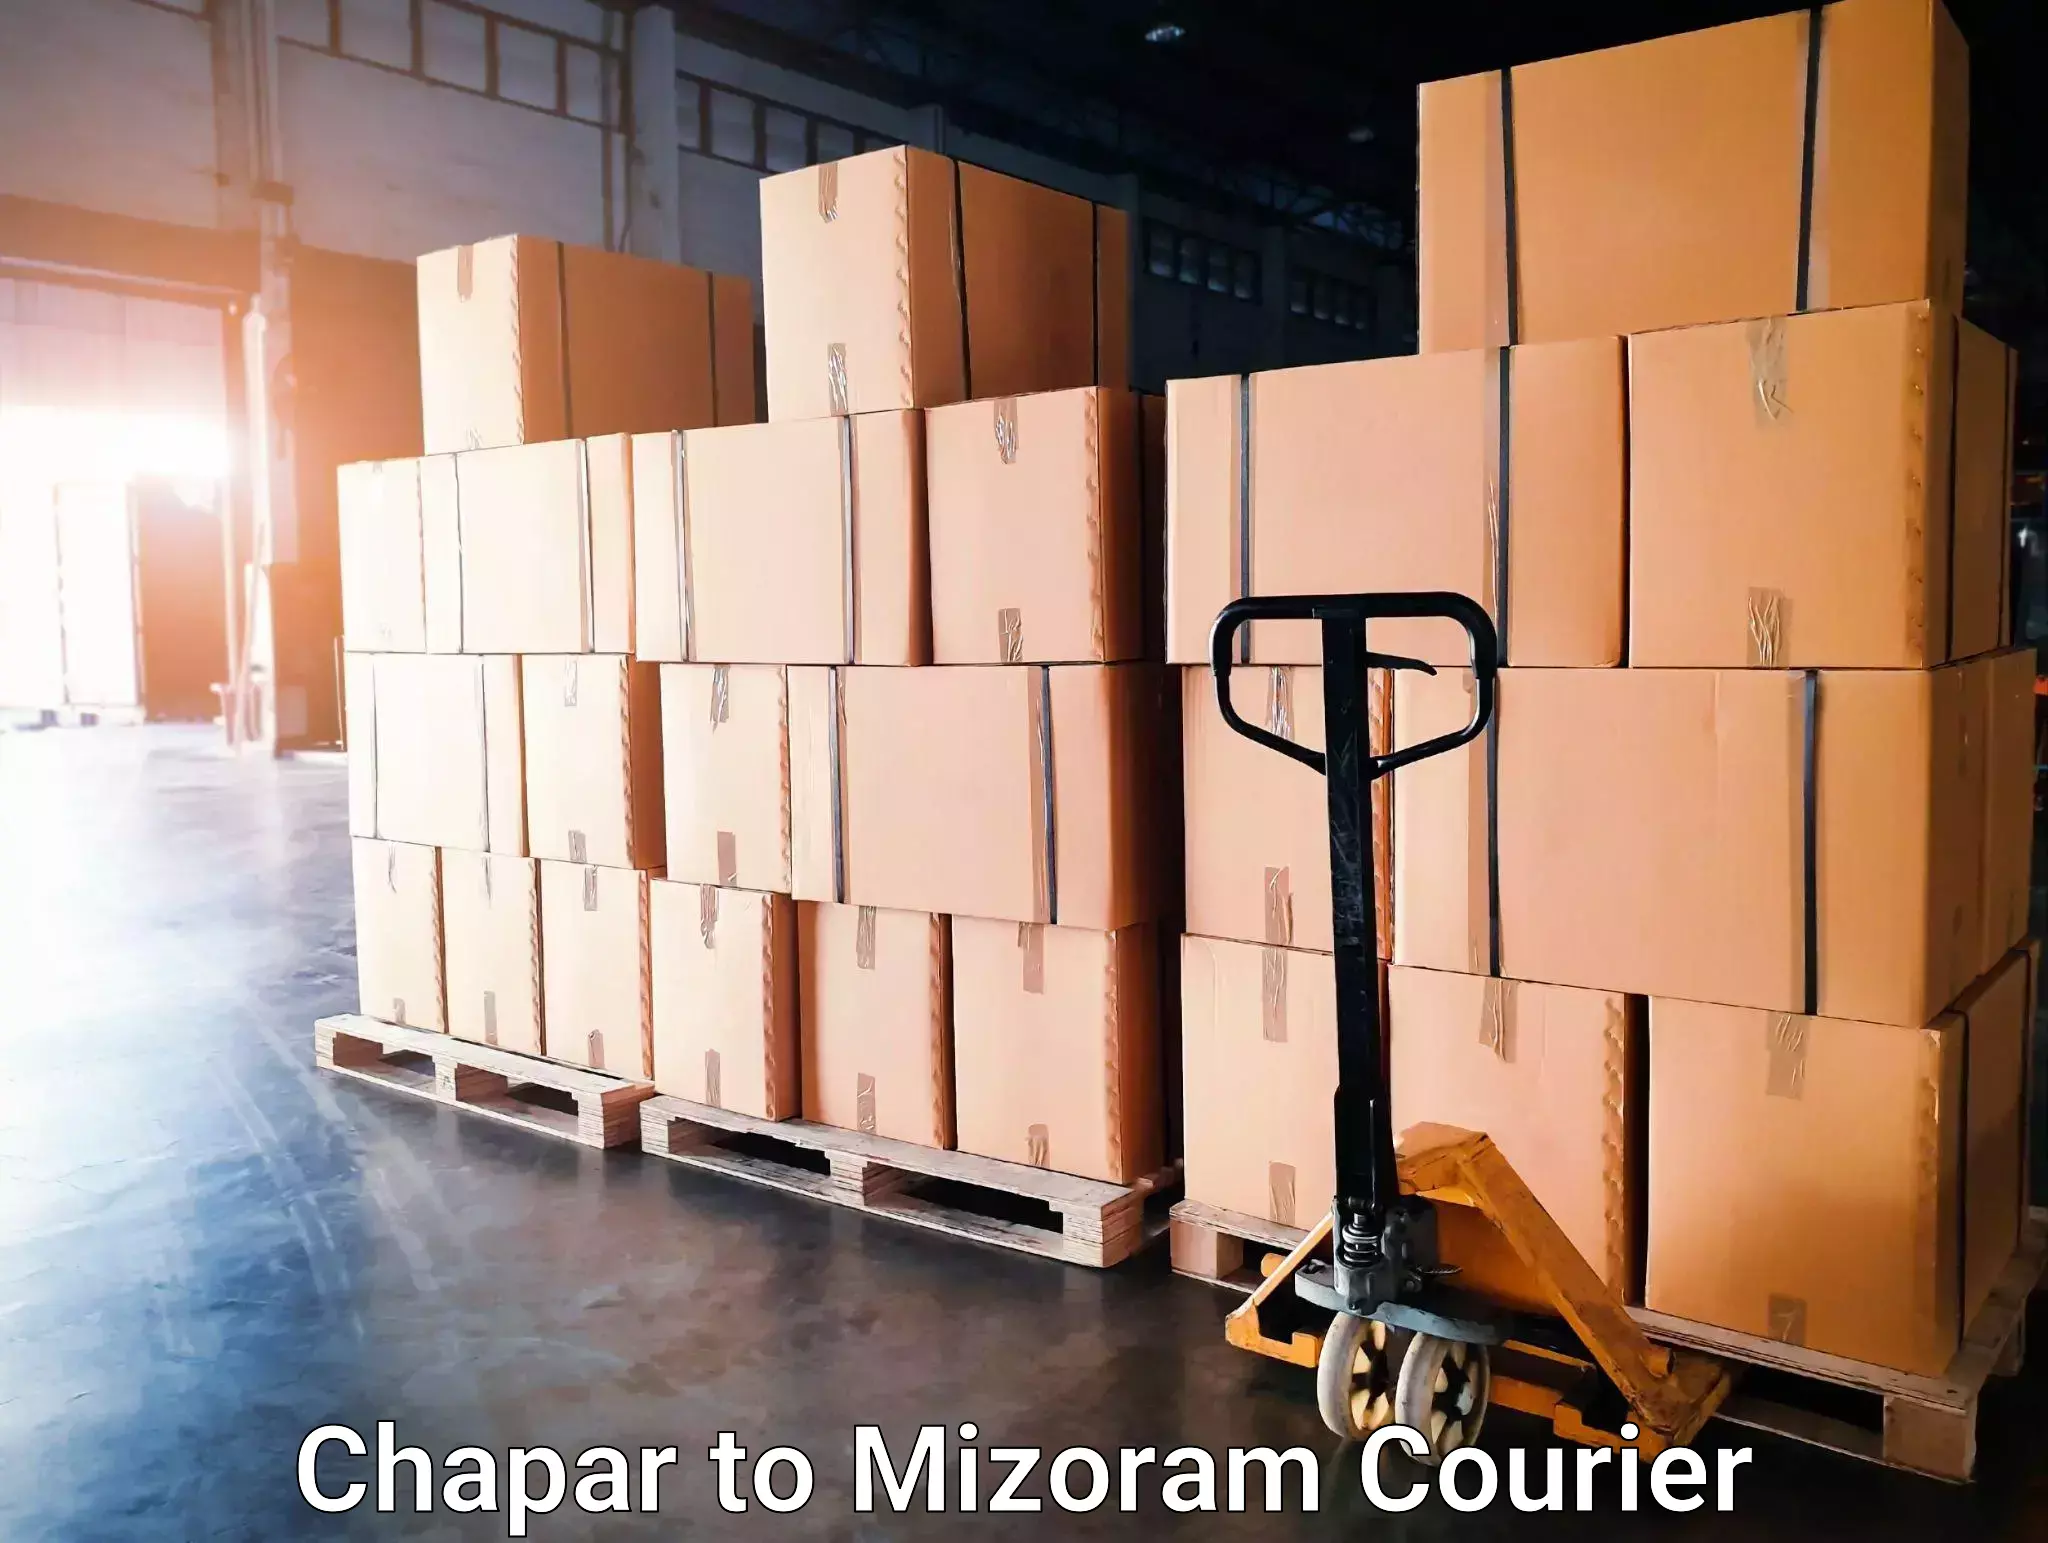 Courier dispatch services Chapar to Mizoram